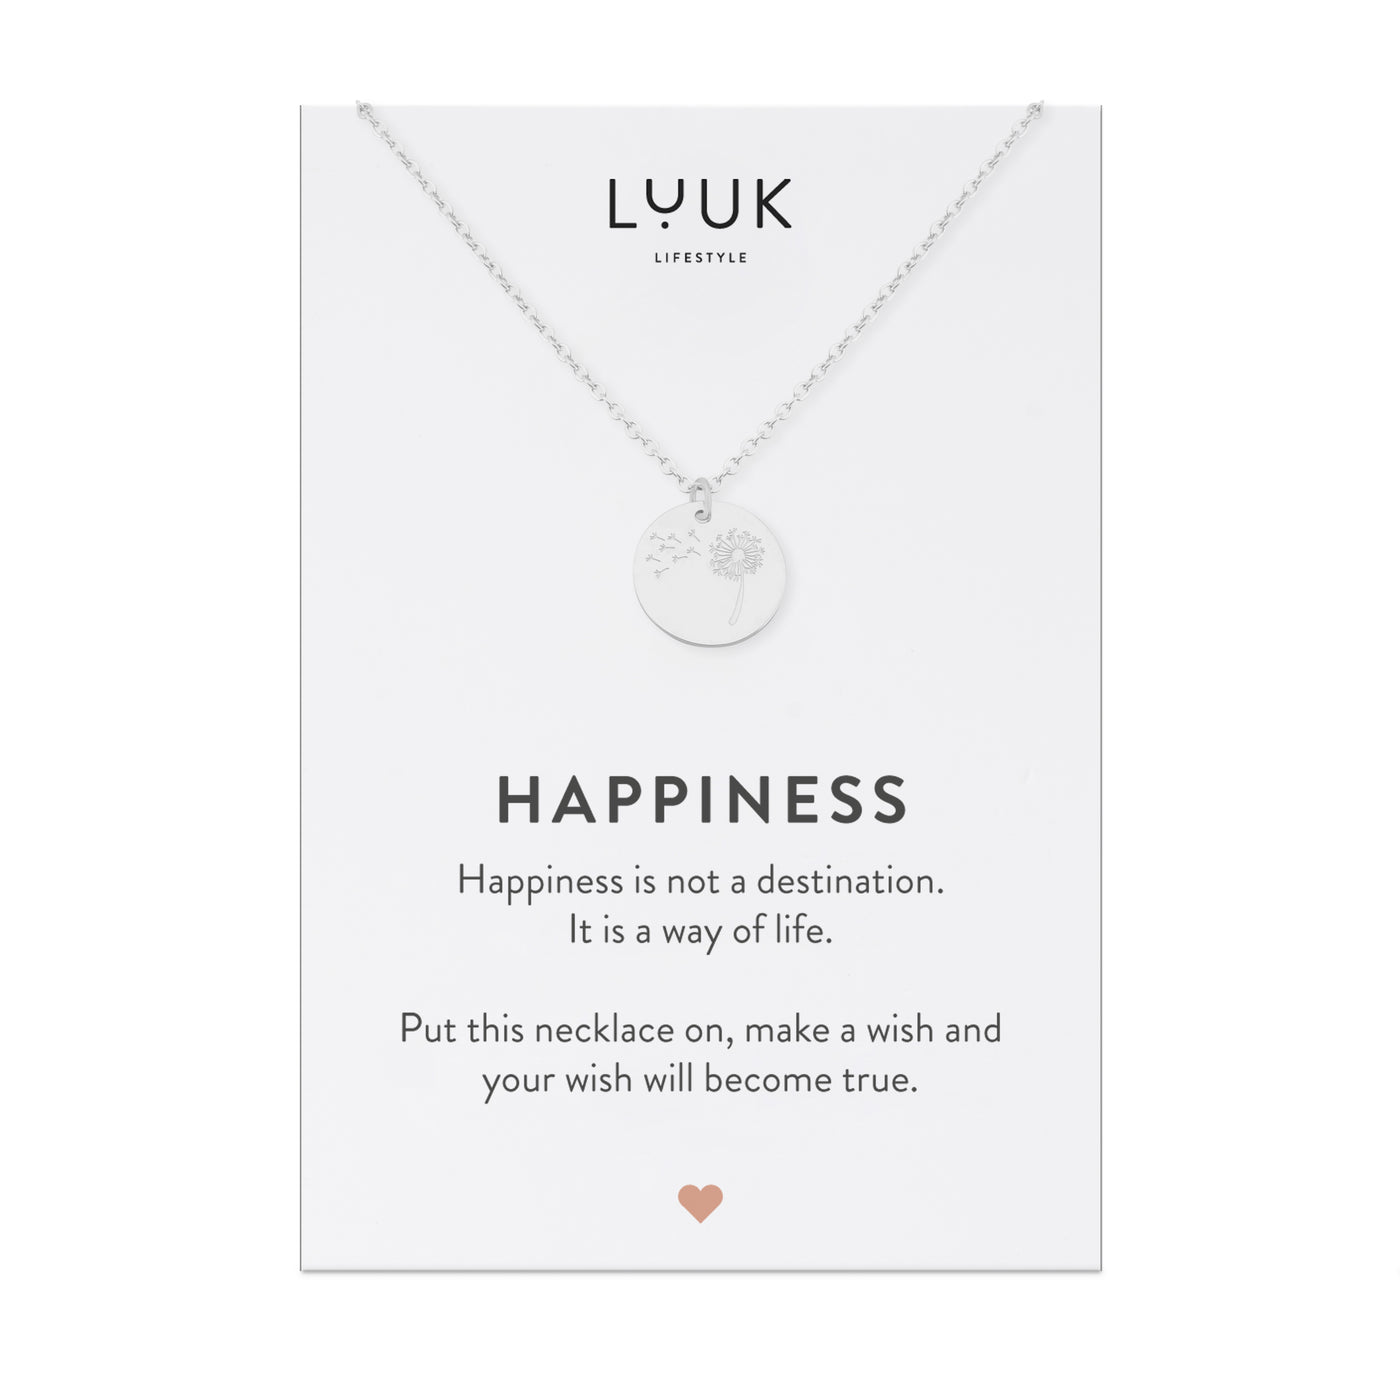 Halskette mit Pusteblumen Anhänger aus Edelstahl auf Happiness Spruchkarte von der Marke Luuk Lifestyle 